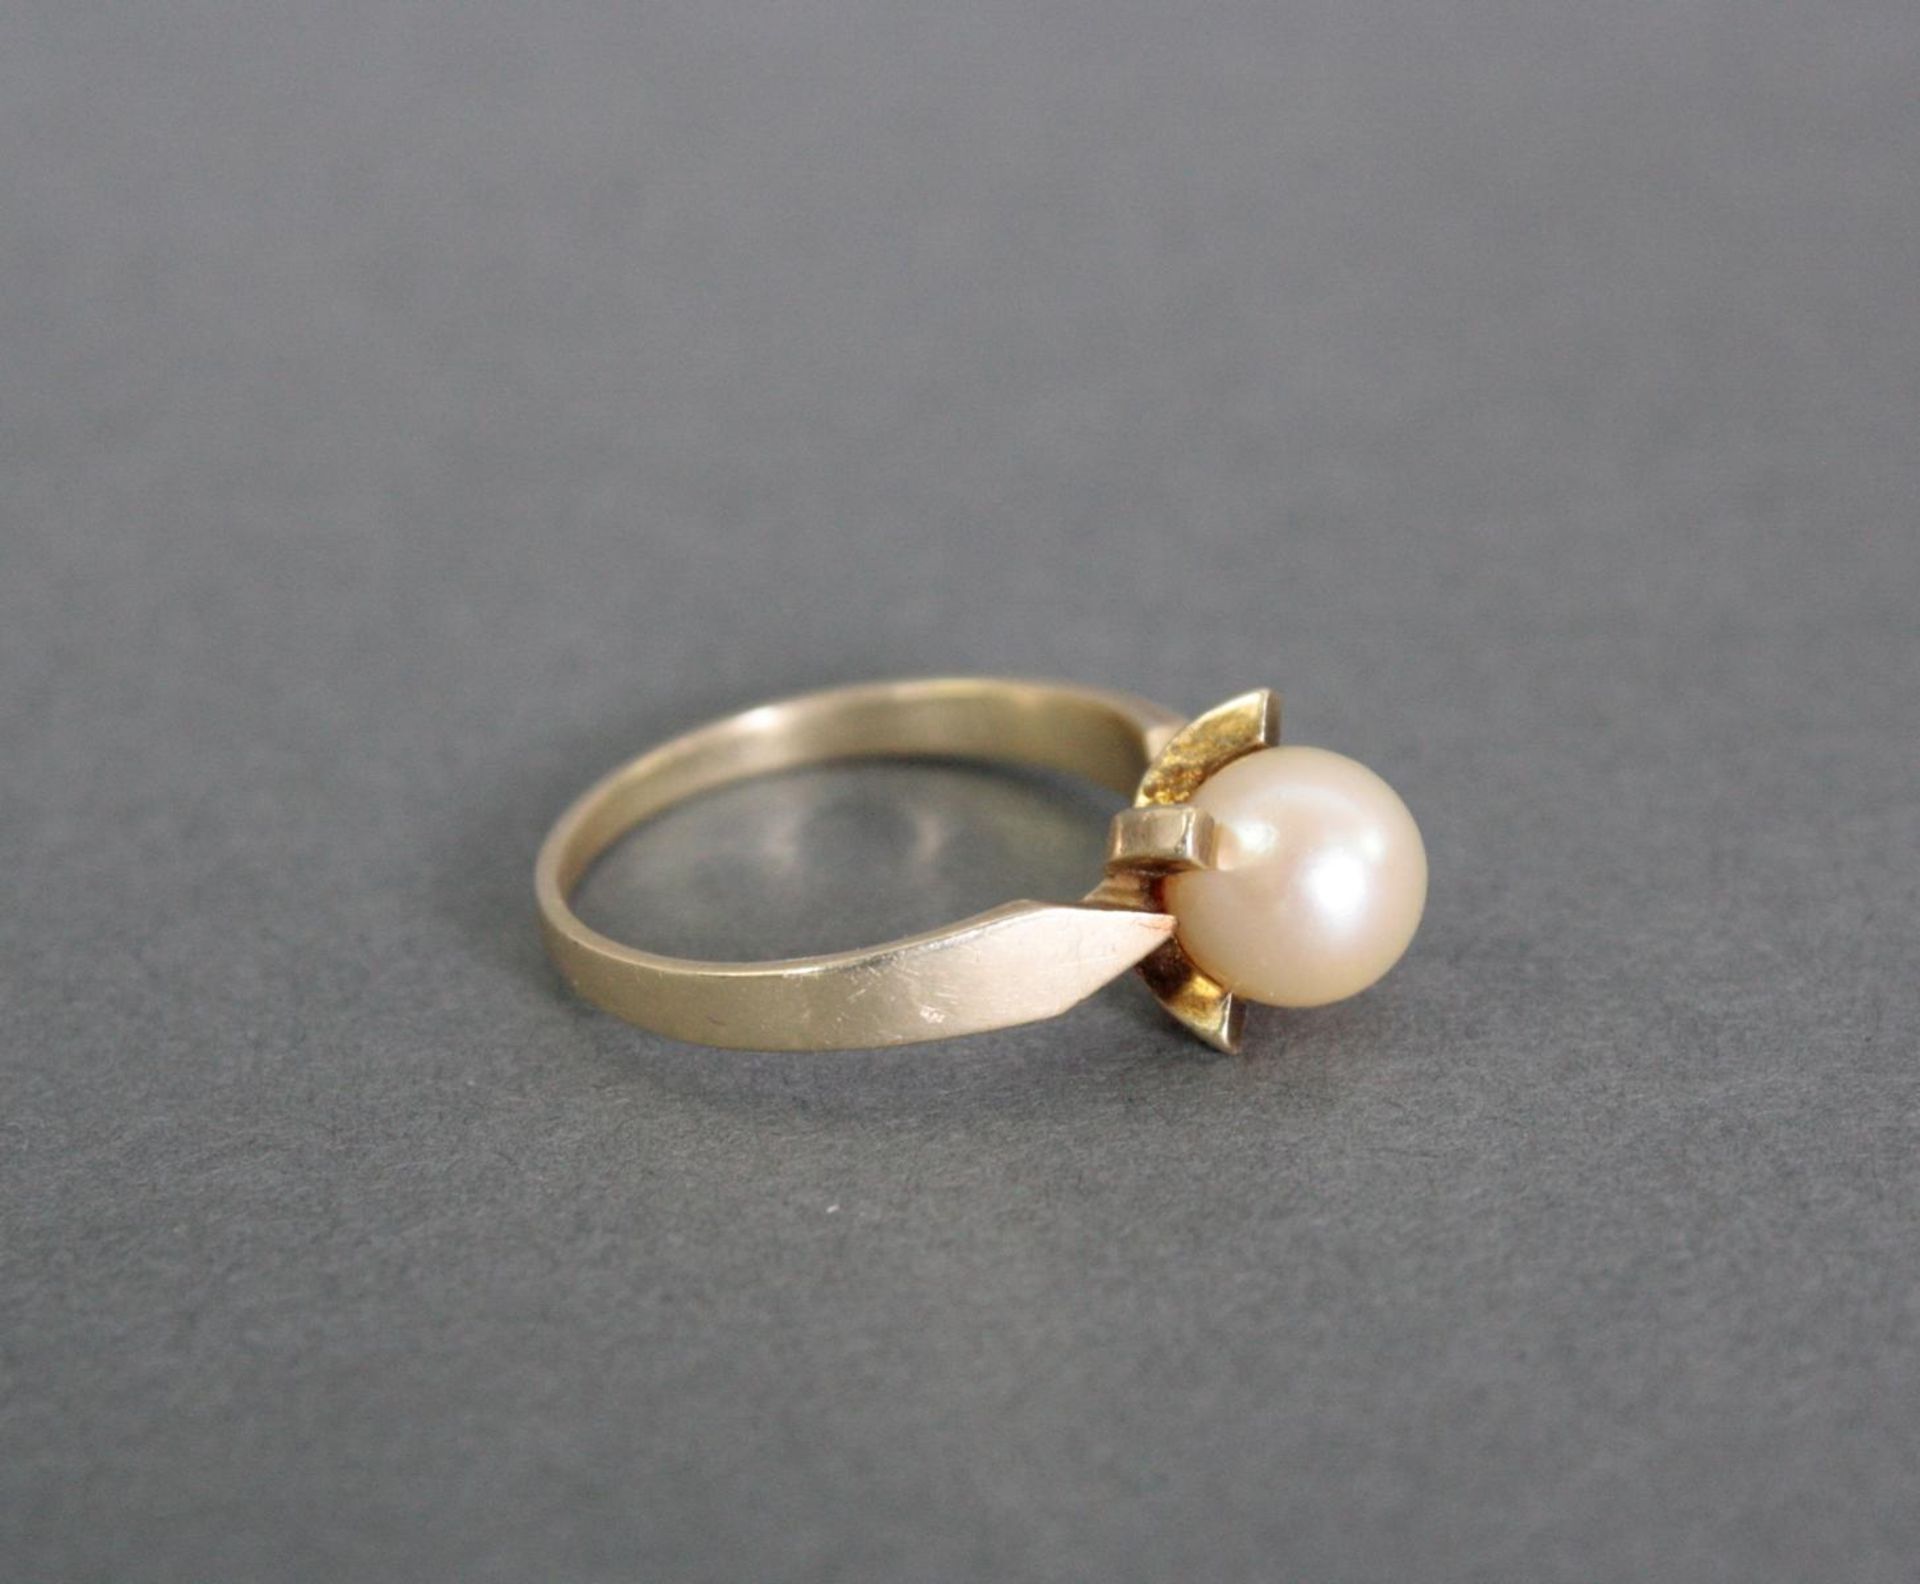 Damenring mit Perle, 14 Karat Gelbgold1 Perle Durchmesser 7,5 mm, Ringgröße 58, 3,4 g. - Image 2 of 3